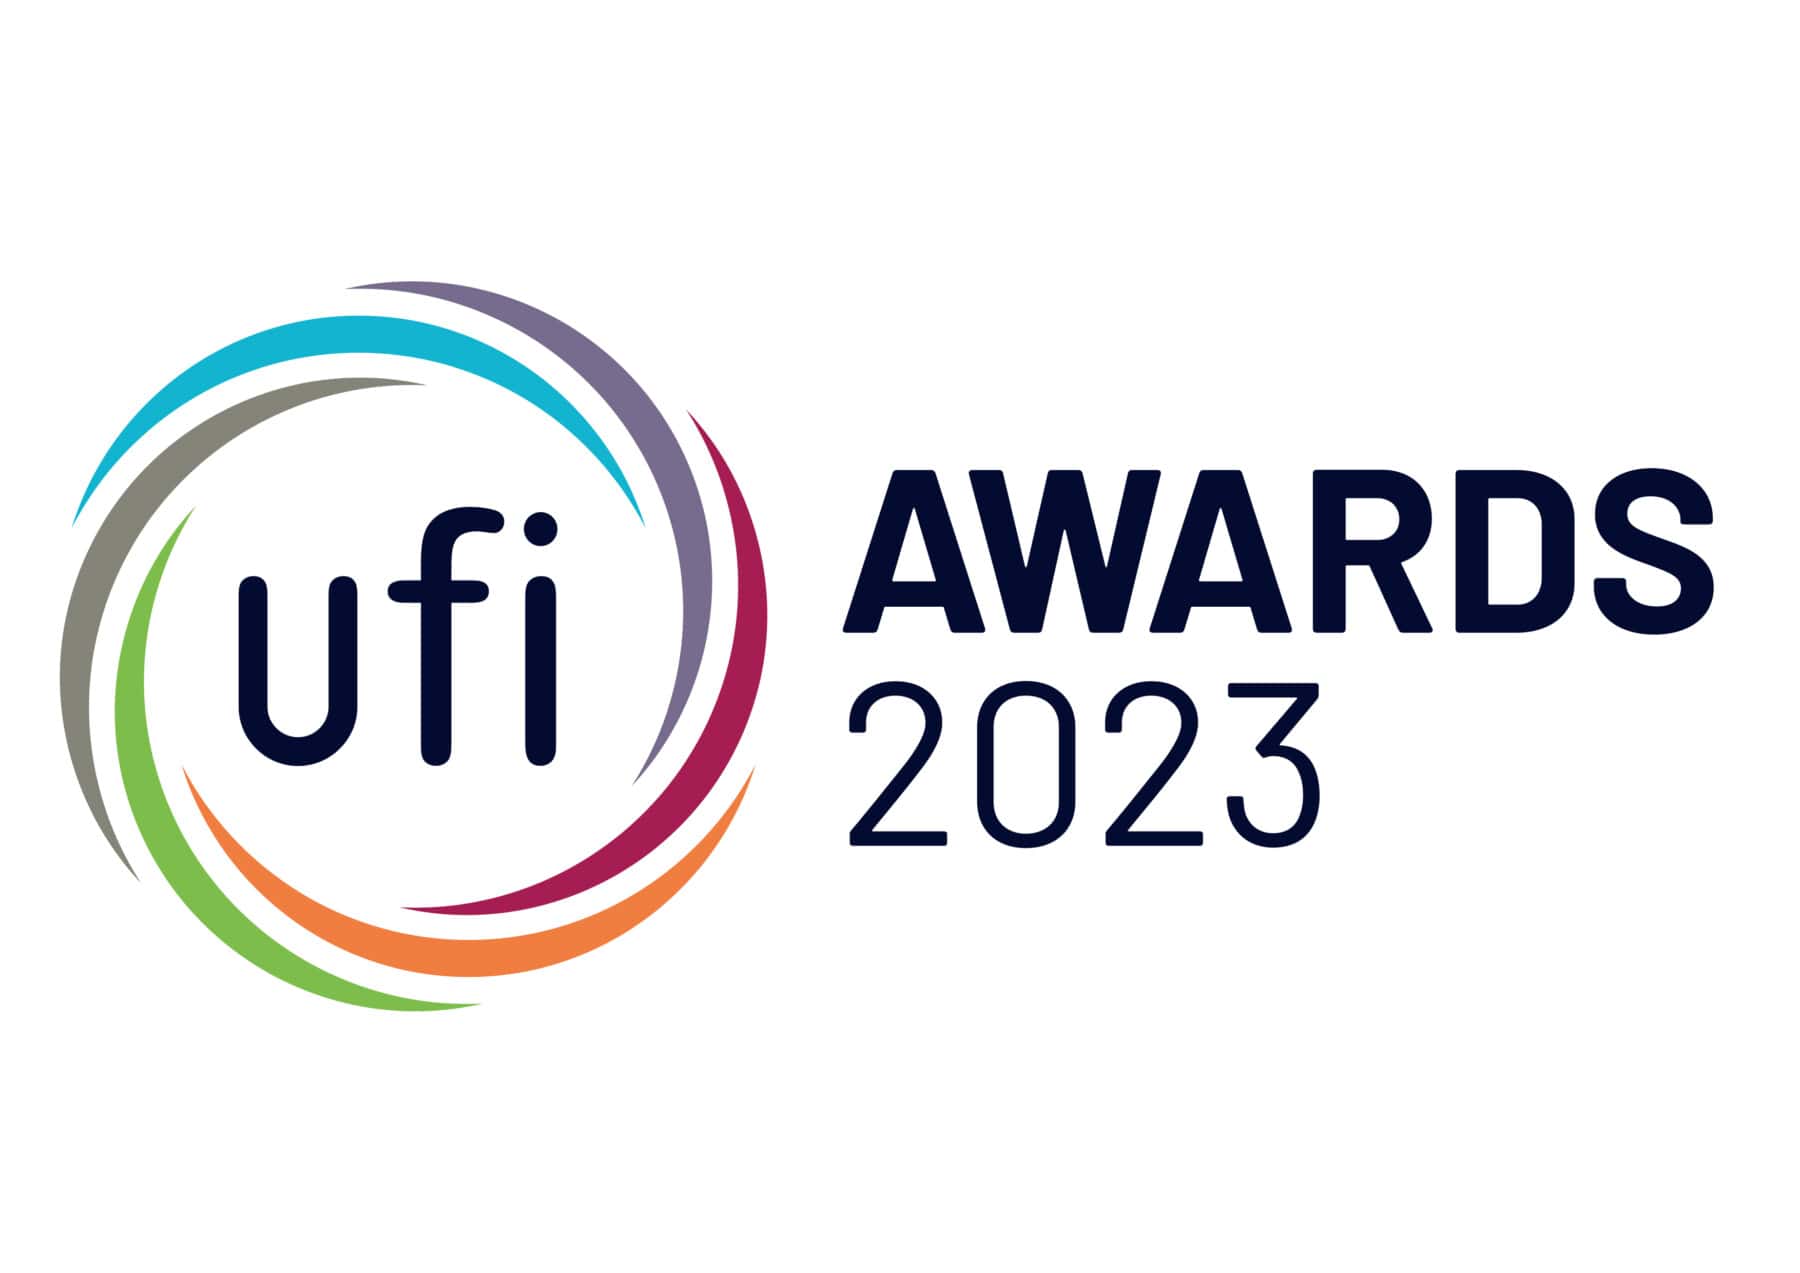 Gamescom gewinnt UFI Marketing Award 2023 für herausragende Strategien